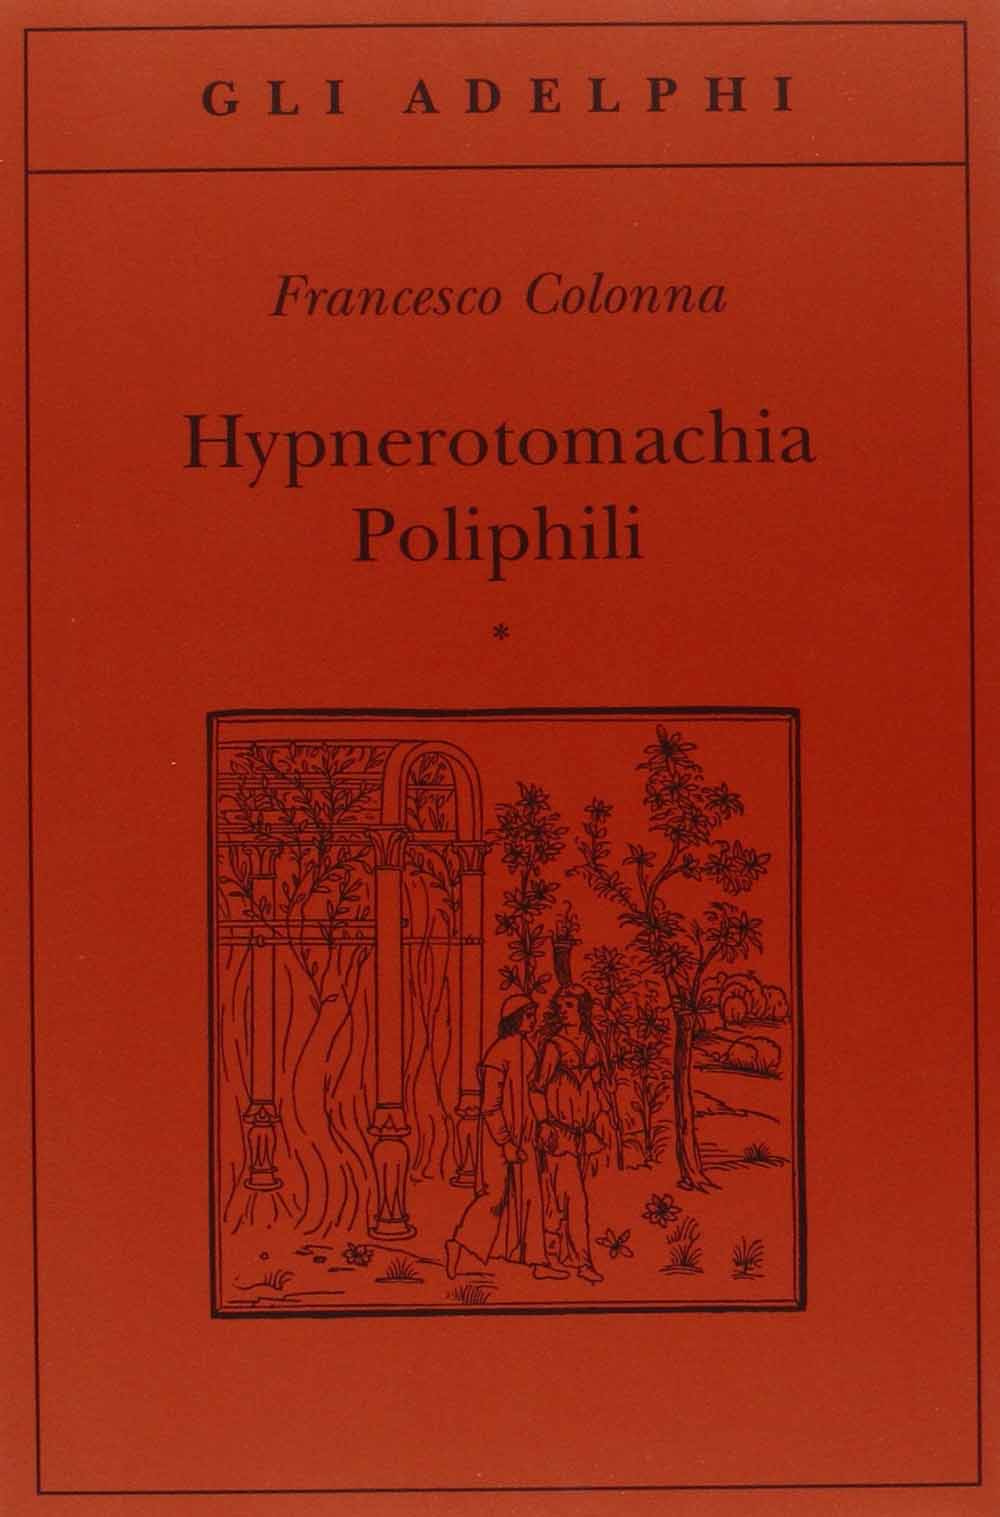 Libri Francesco Colonna - Hypnerotomachia Poliphili (2 Tomi Indivisibili) NUOVO SIGILLATO, EDIZIONE DEL 03/11/2004 SUBITO DISPONIBILE